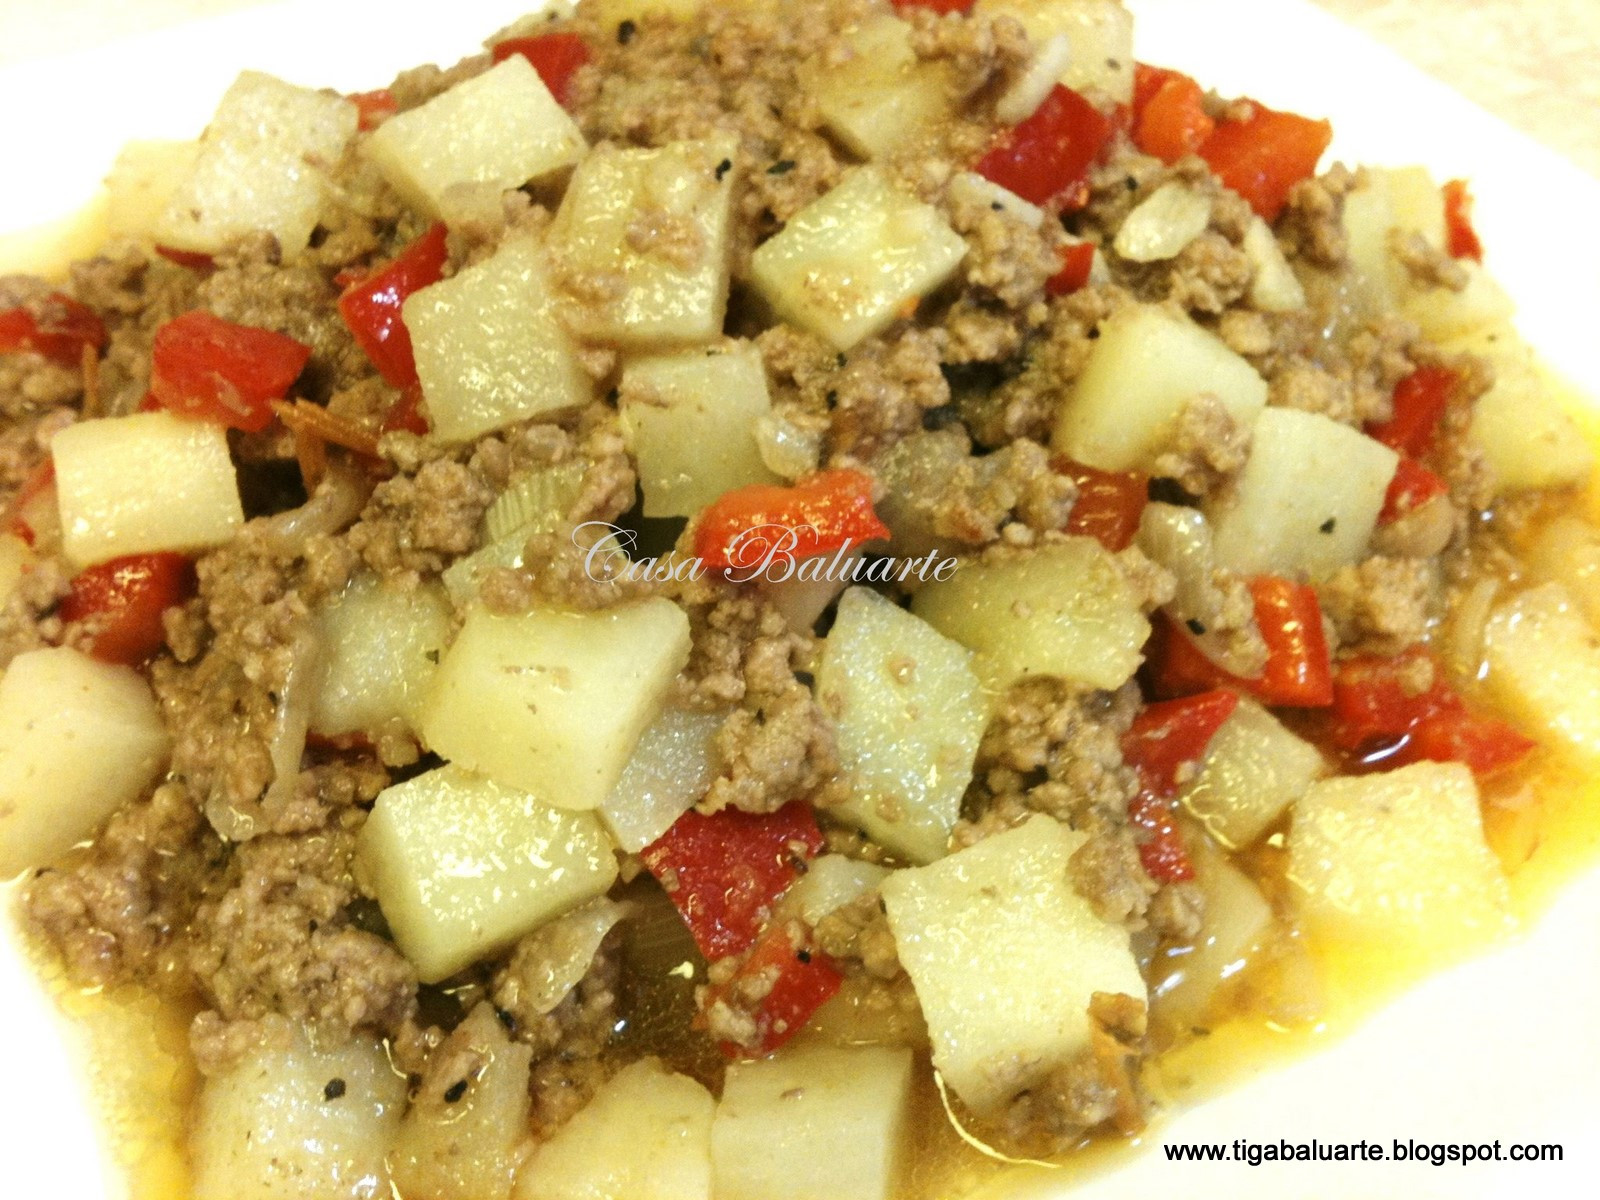 Ground Beef And Potato Recipes
 Casa Baluarte Filipino Recipes Ground Beef and Potatoes